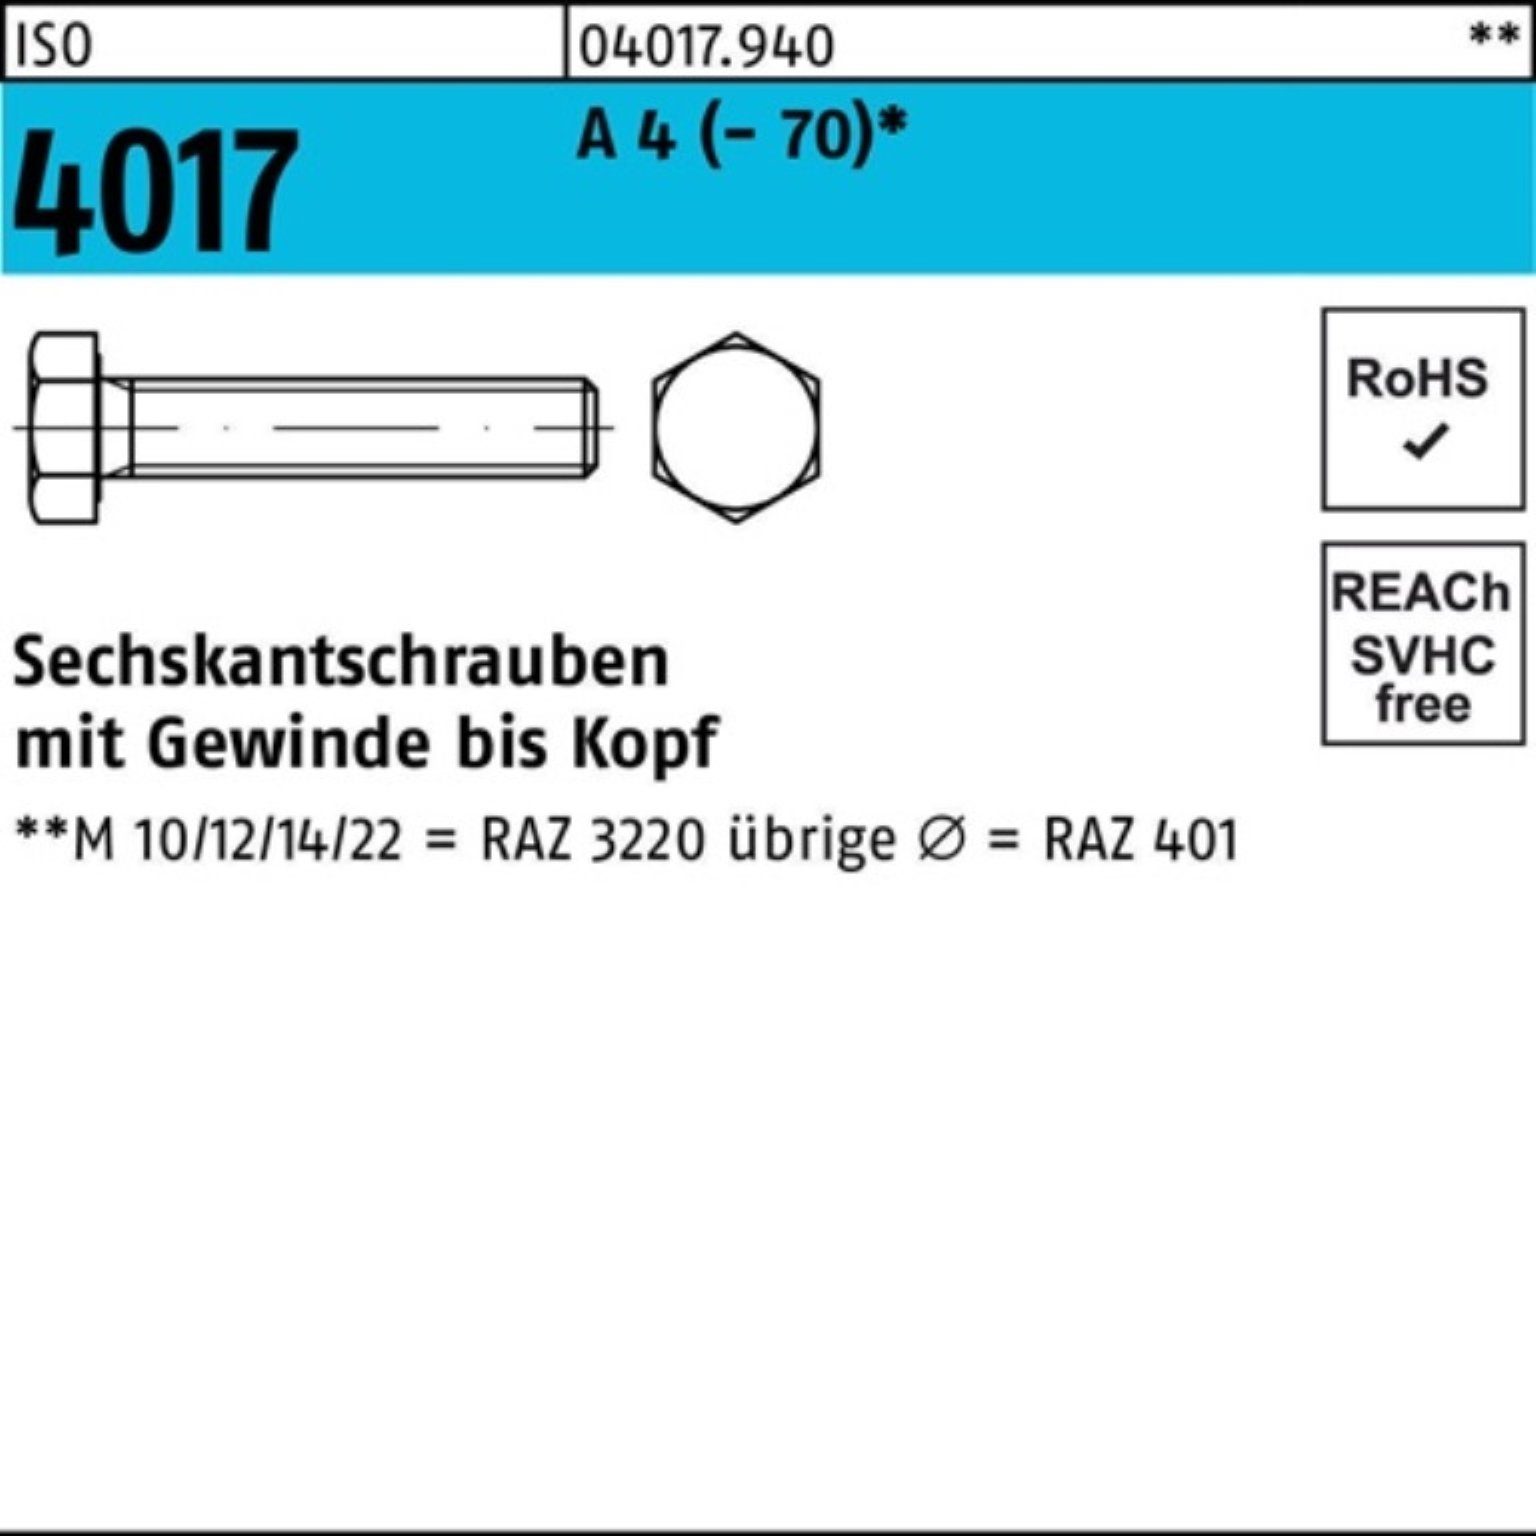 Bufab Sechskantschraube 100er Pack Sechskantschraube ISO 4017 VG M20x 75 A 4 (70) 25 Stück